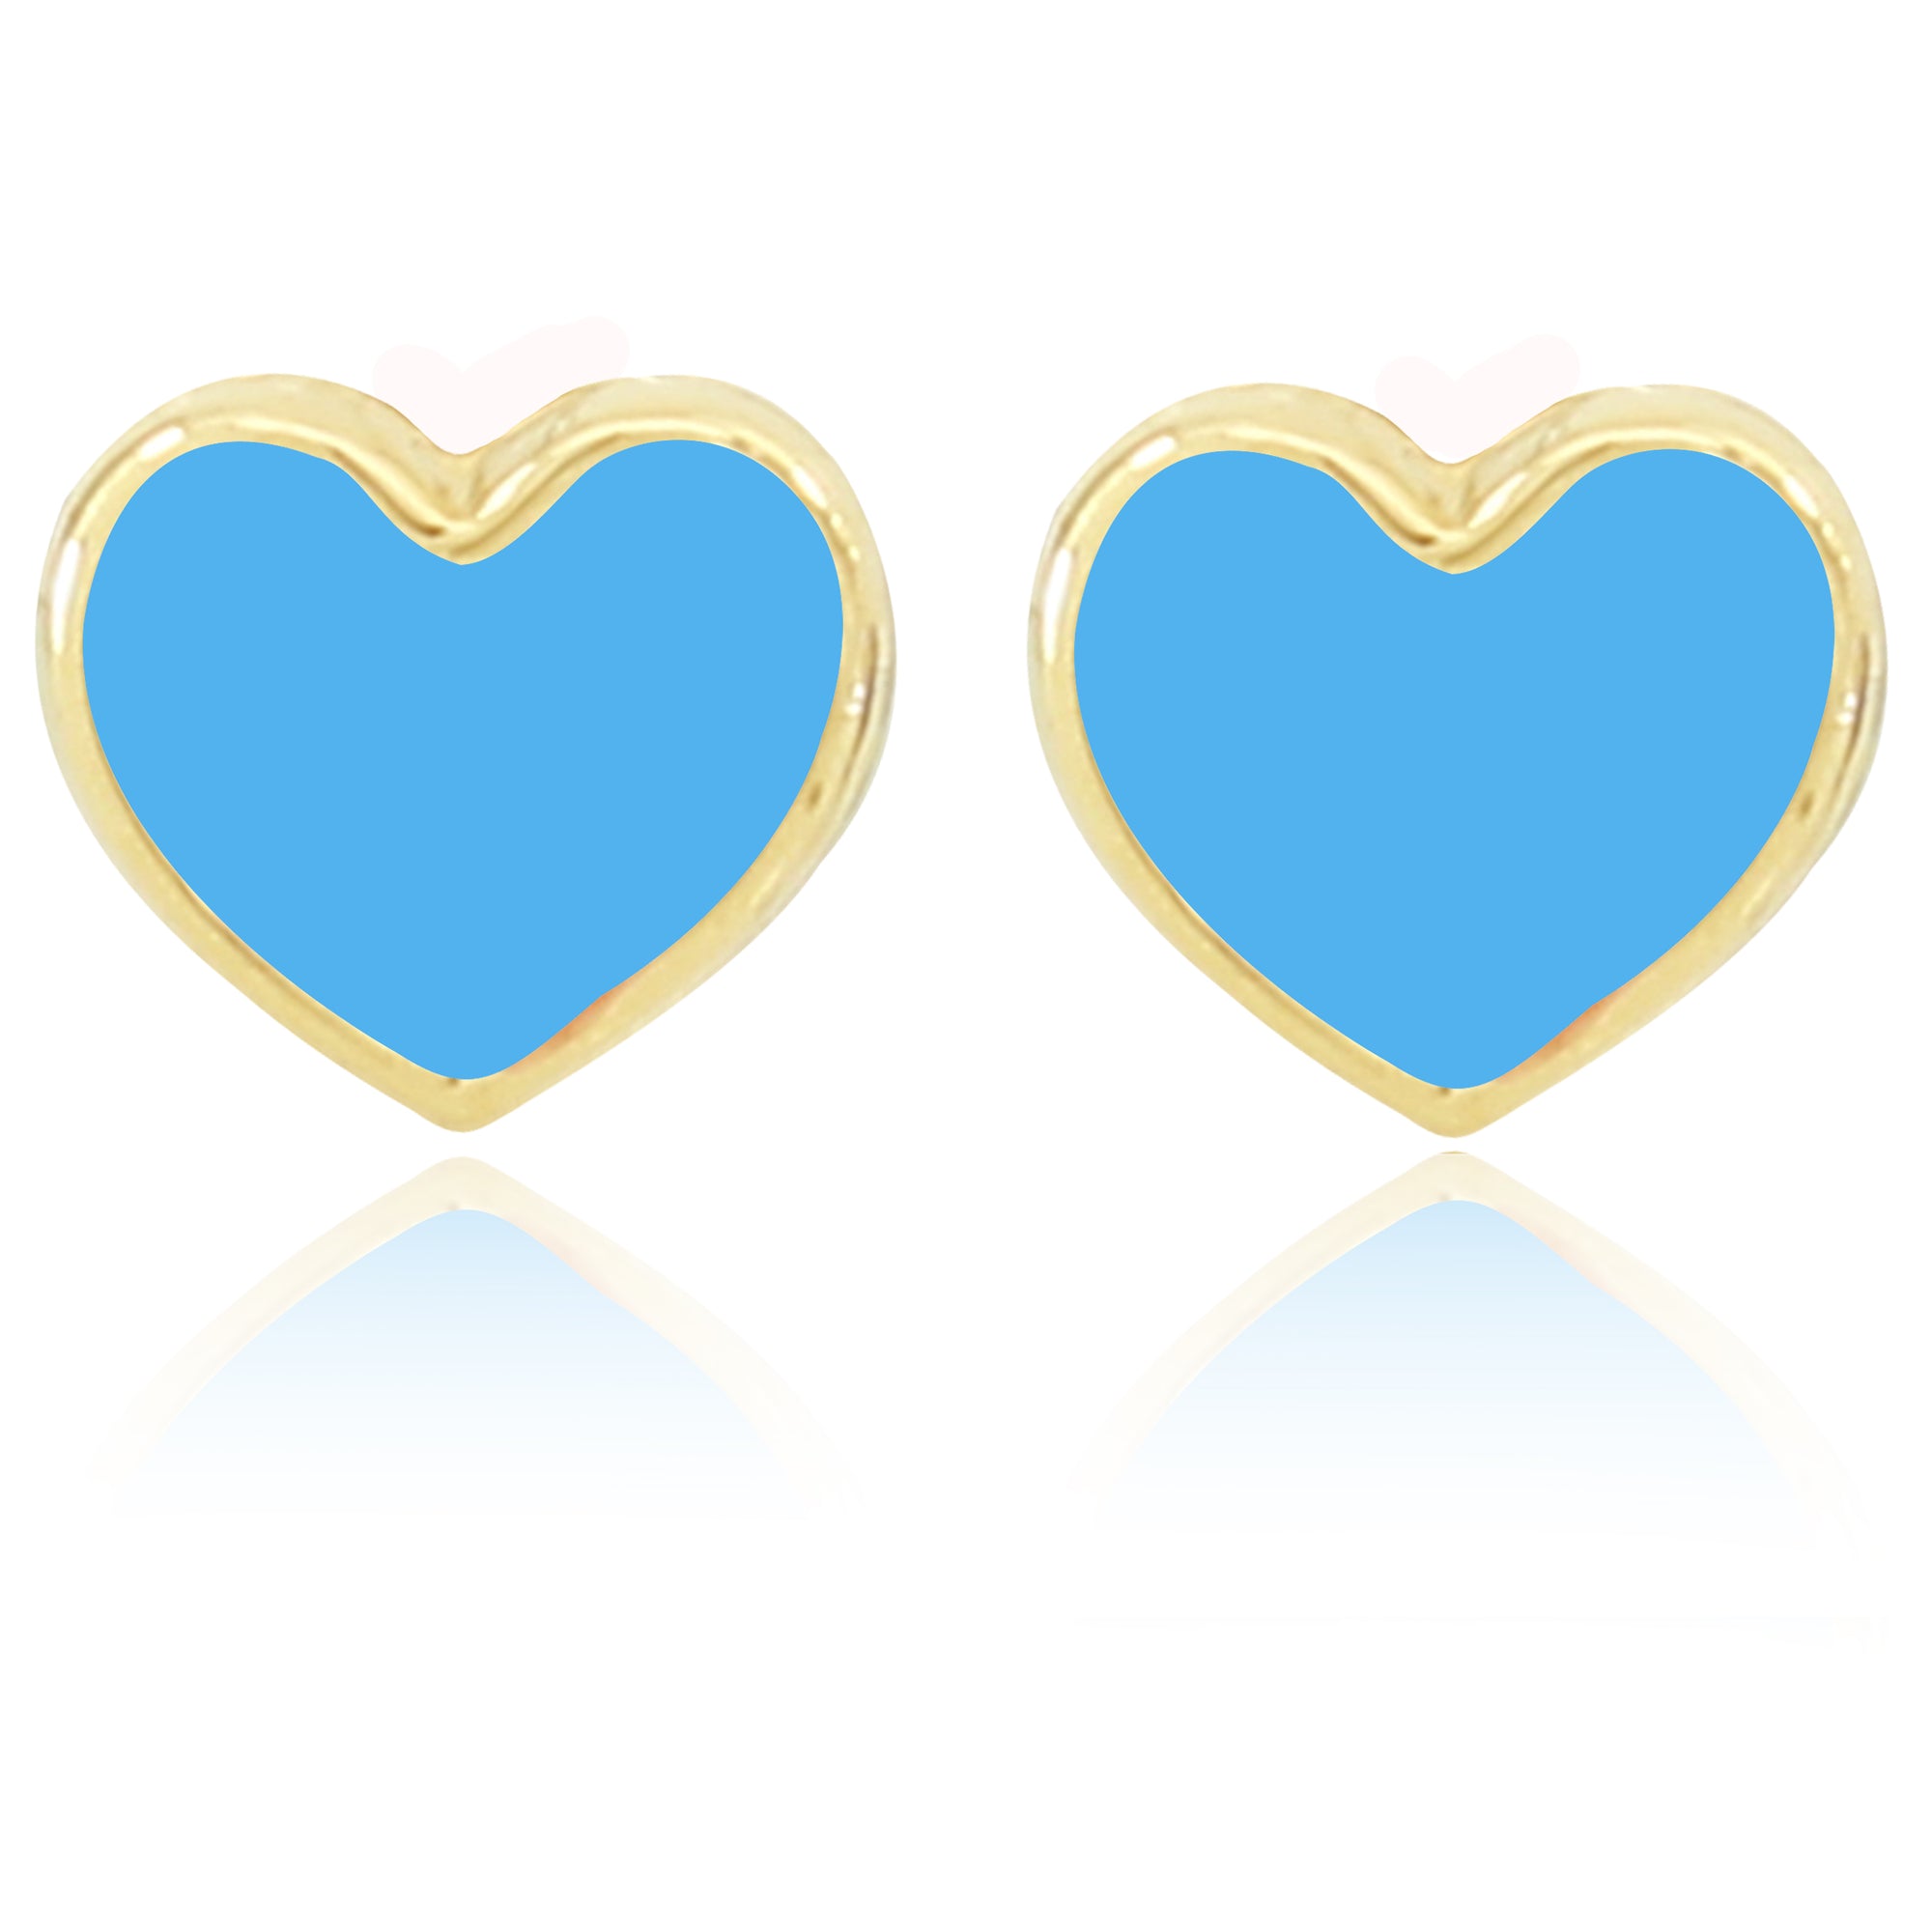 Shape of My Heart Earrings - Blue